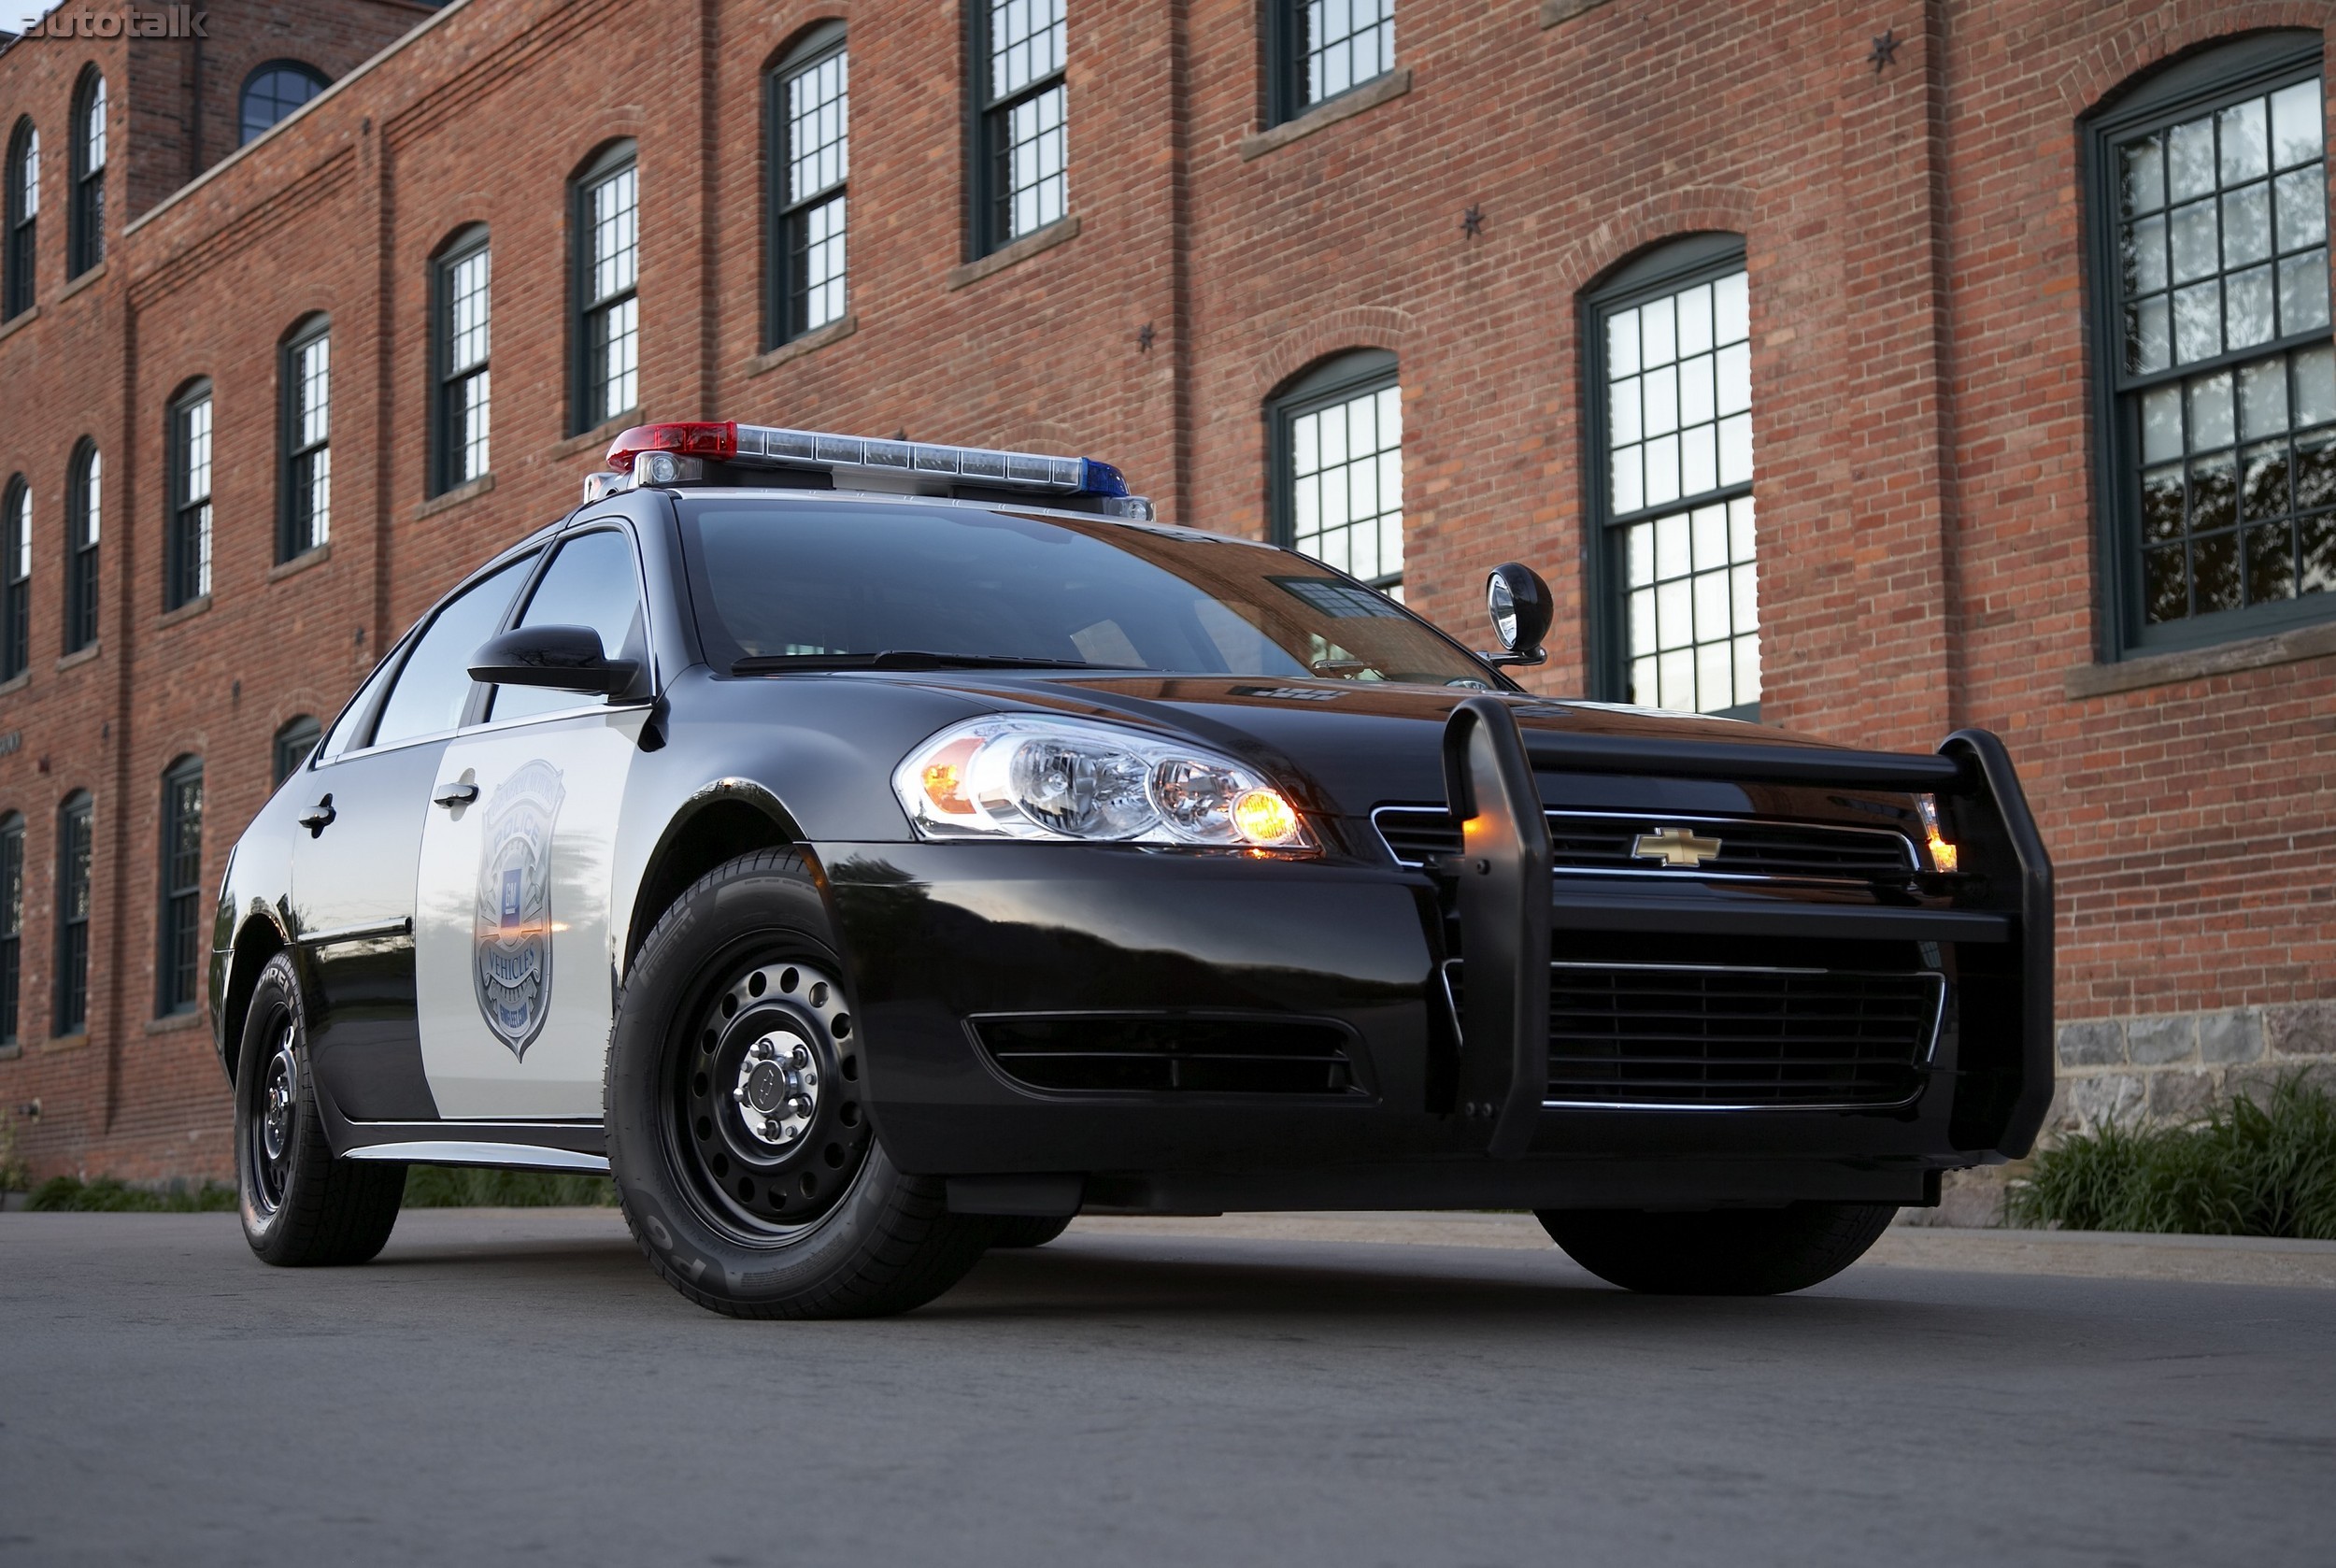 2011 Chevrolet Impala Police Vehicle